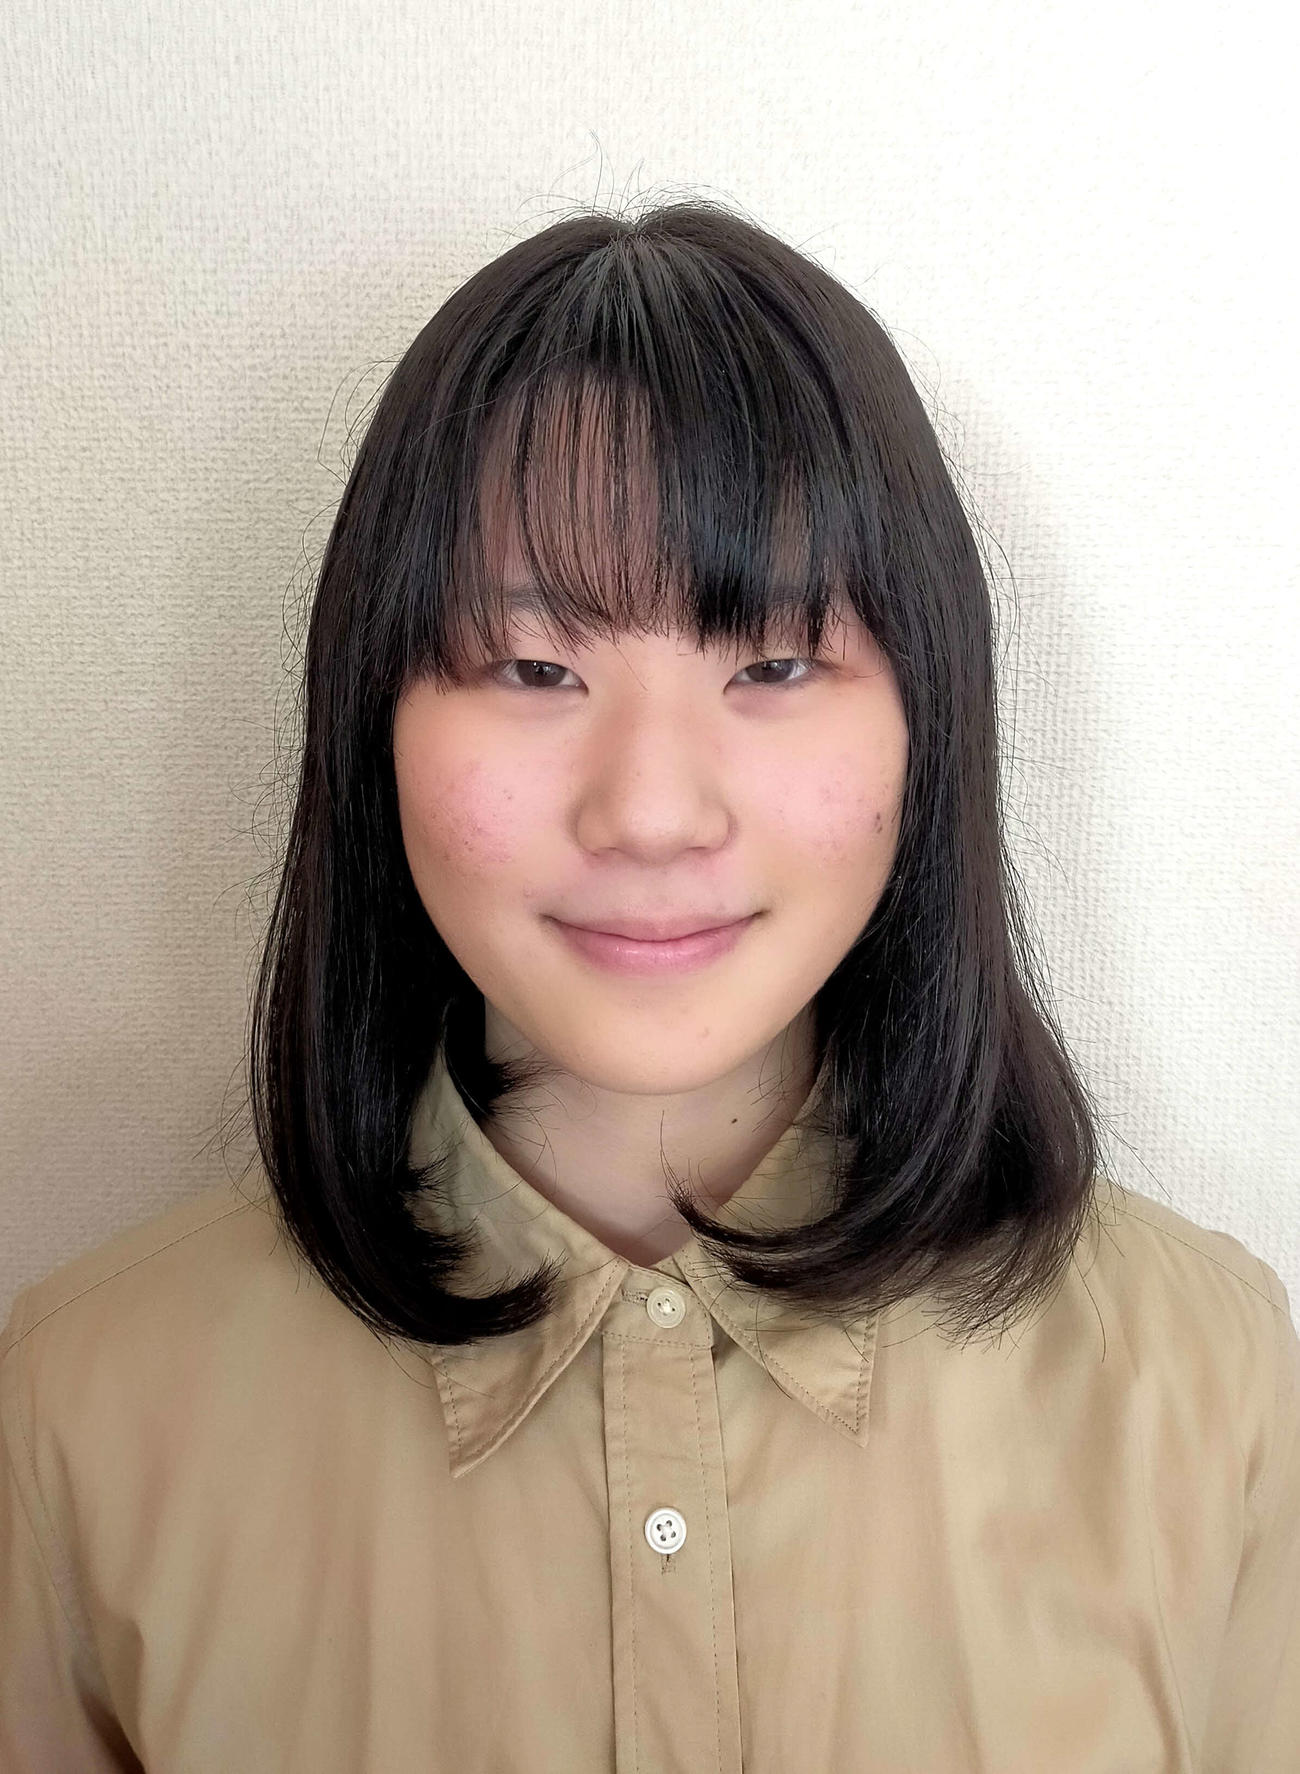 女流特別採用推薦棋士として来年1月から対局に参加する竹下奈那新初段